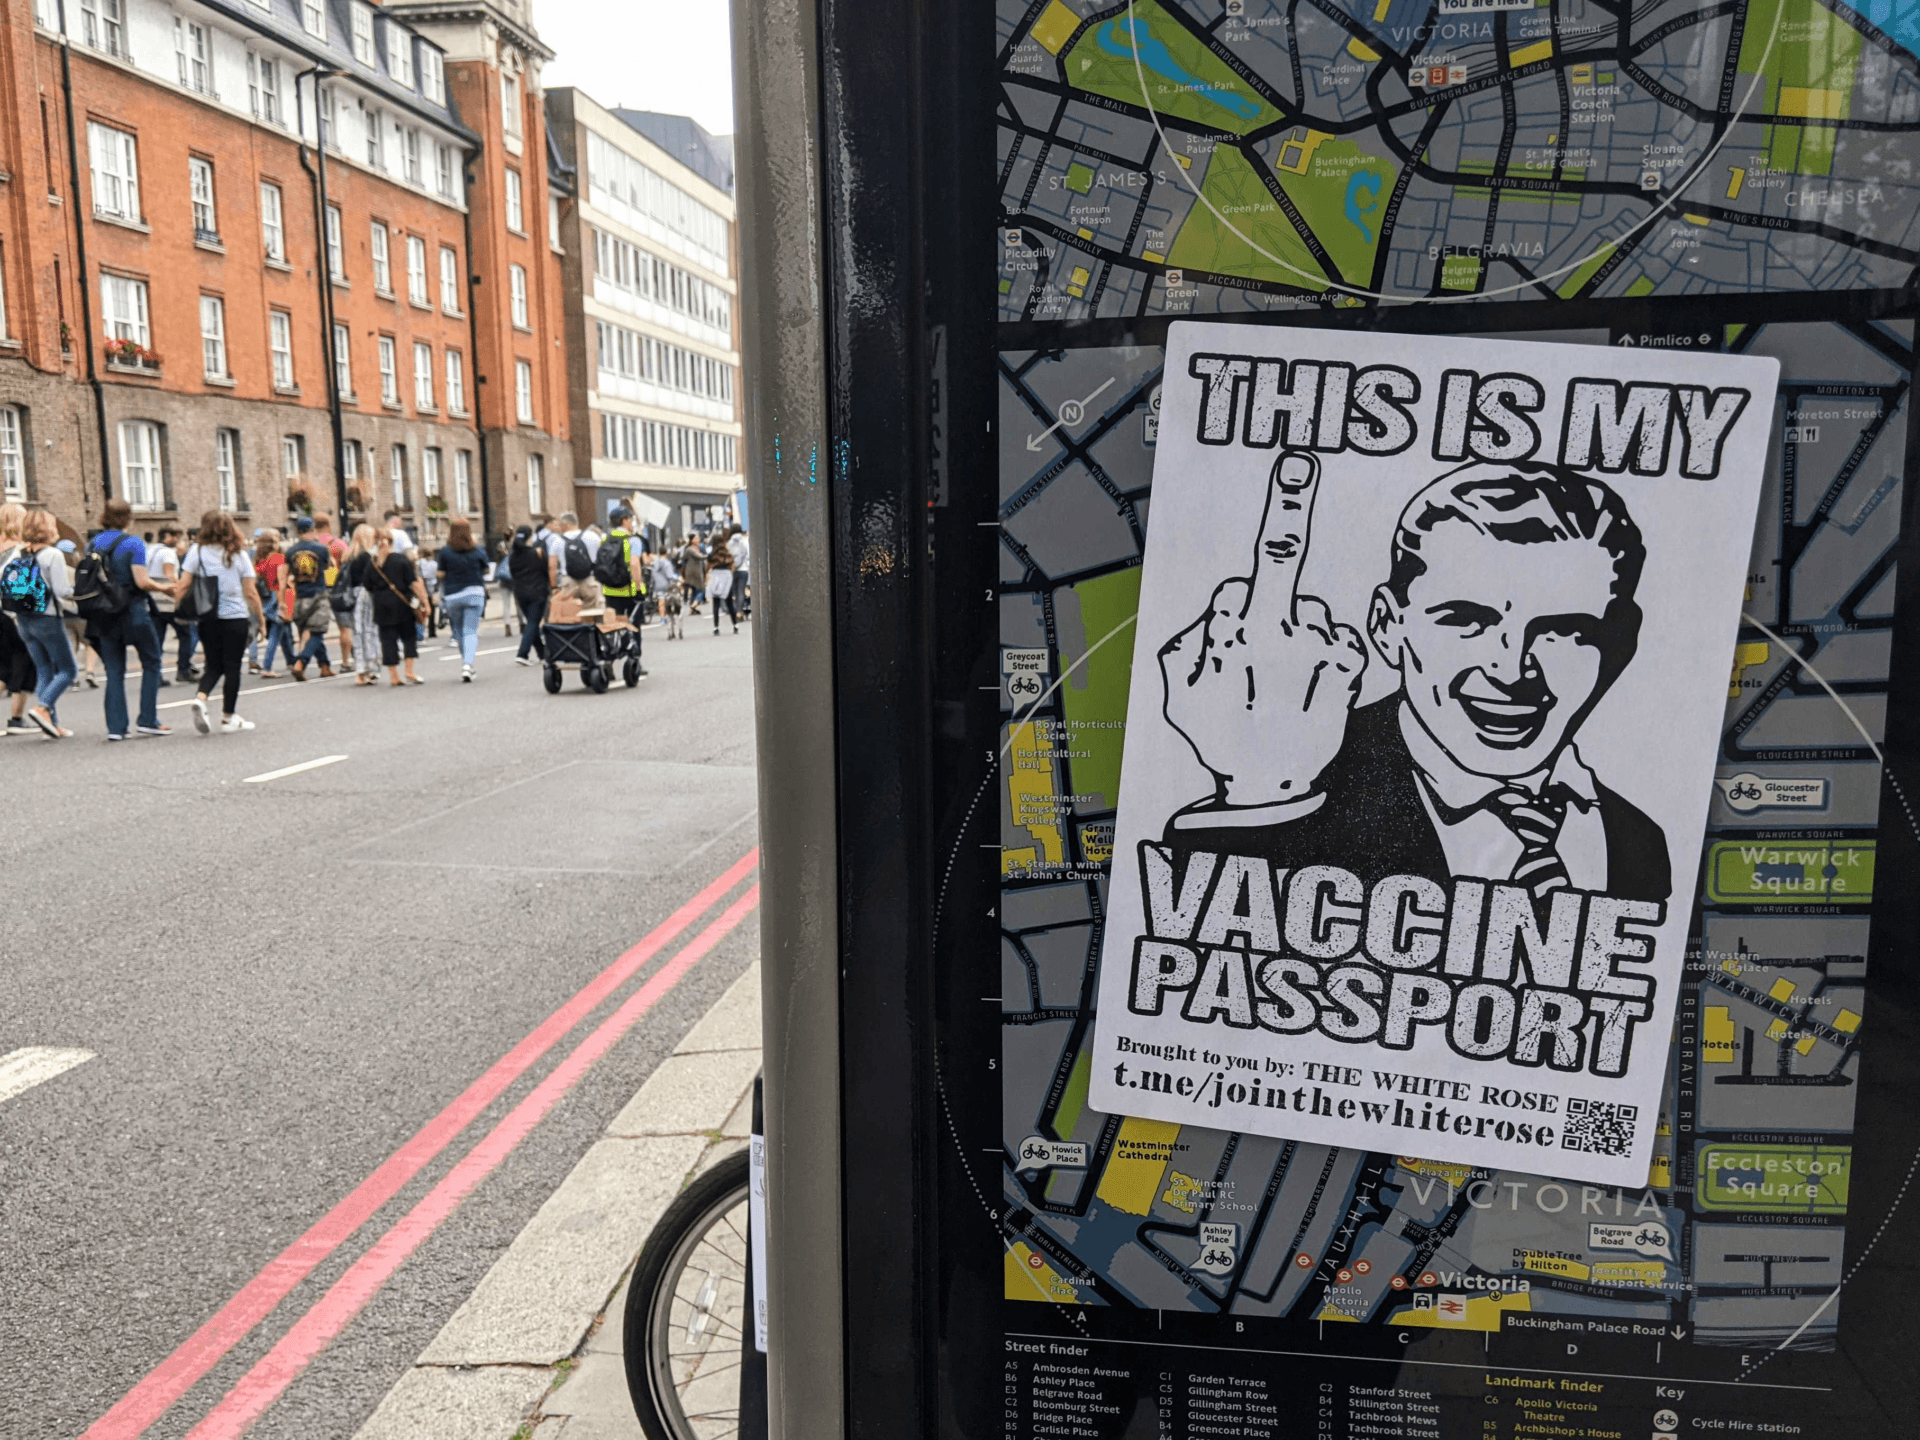 An anti-vaccine passport sticker seen at a protest against coronavirus restrictions in London. September 25th, 2021. Kurt Zindulka, Breitbart News